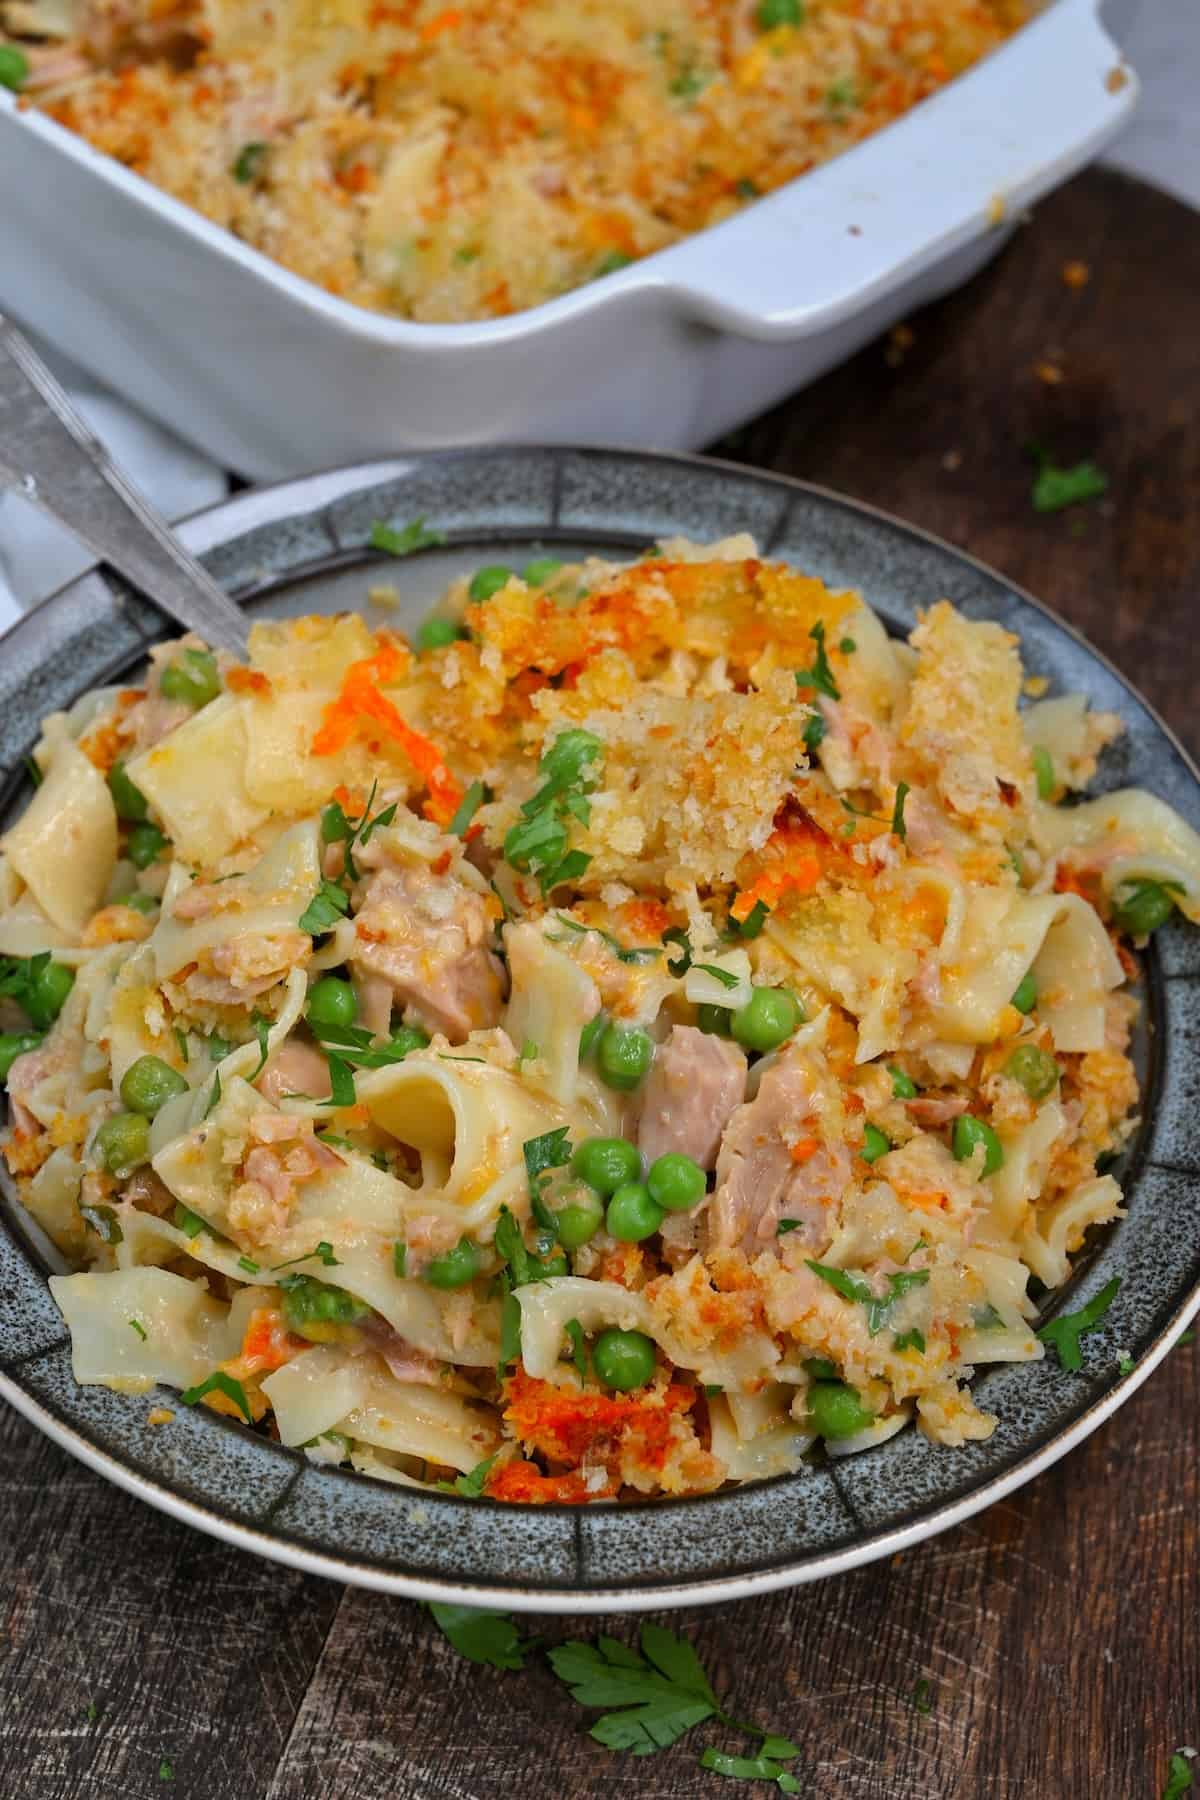 A serving of tuna casserole